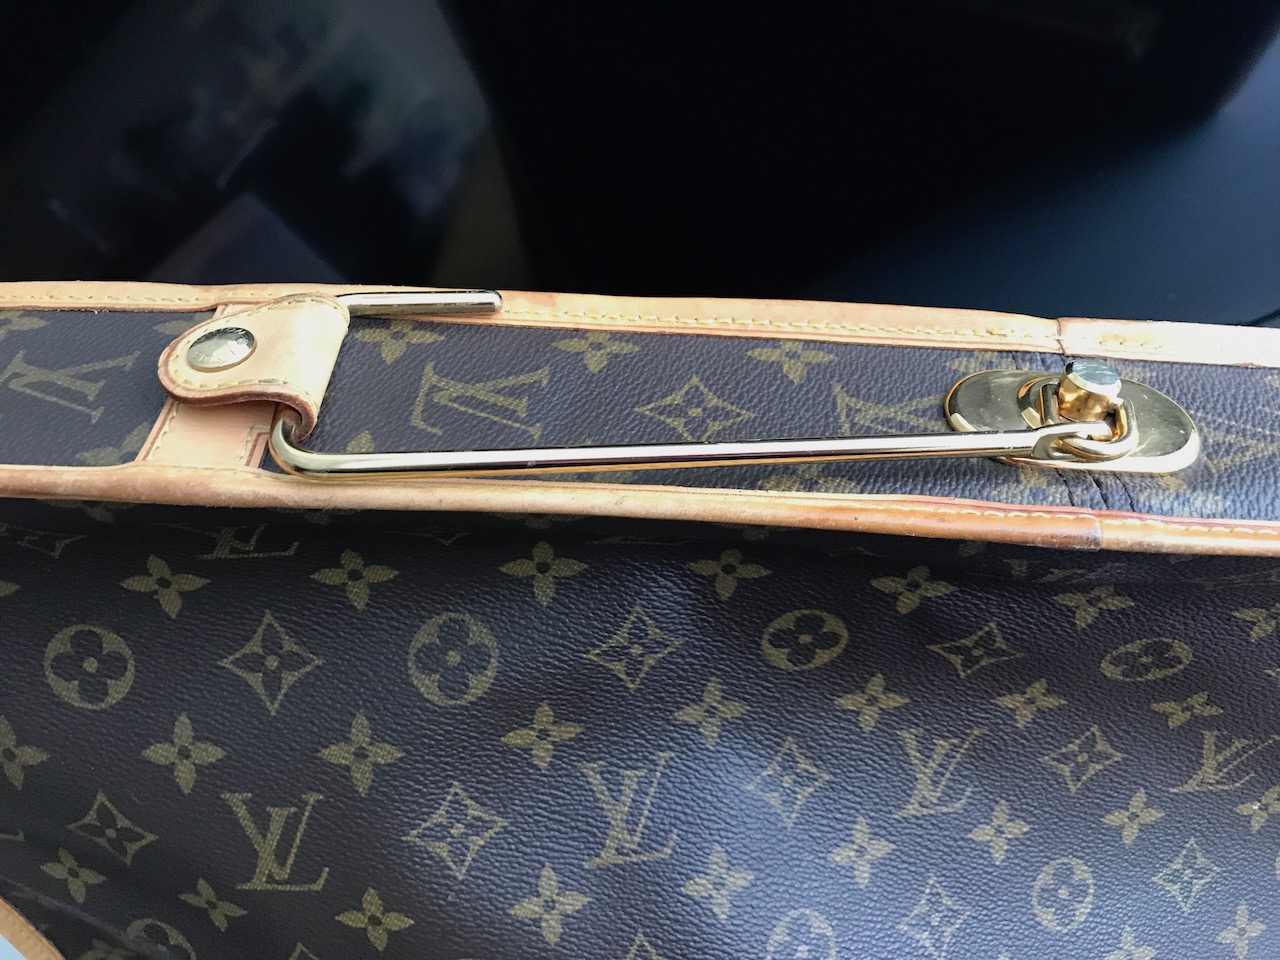 Vintage Louis Vuitton Folding Garment Bag Monogram Canvas Suitcase (A)  #942272